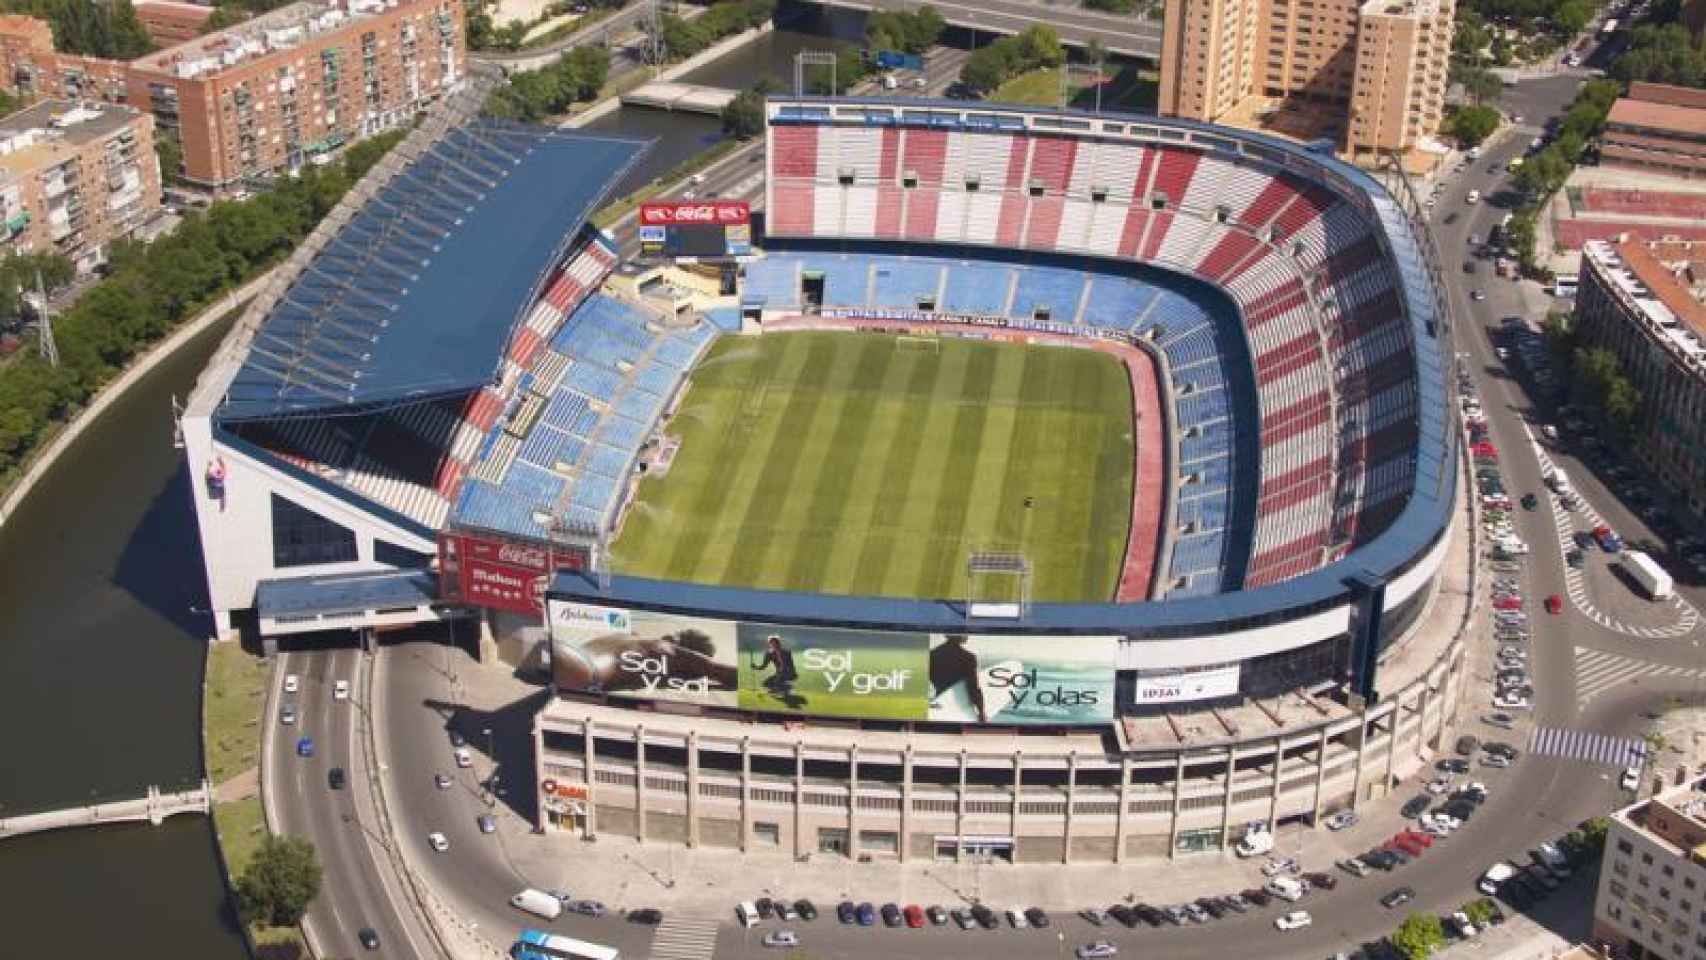 La Operación Calderón está a punto: el Atlético de Madrid jugará en La Peineta en agosto de 2017